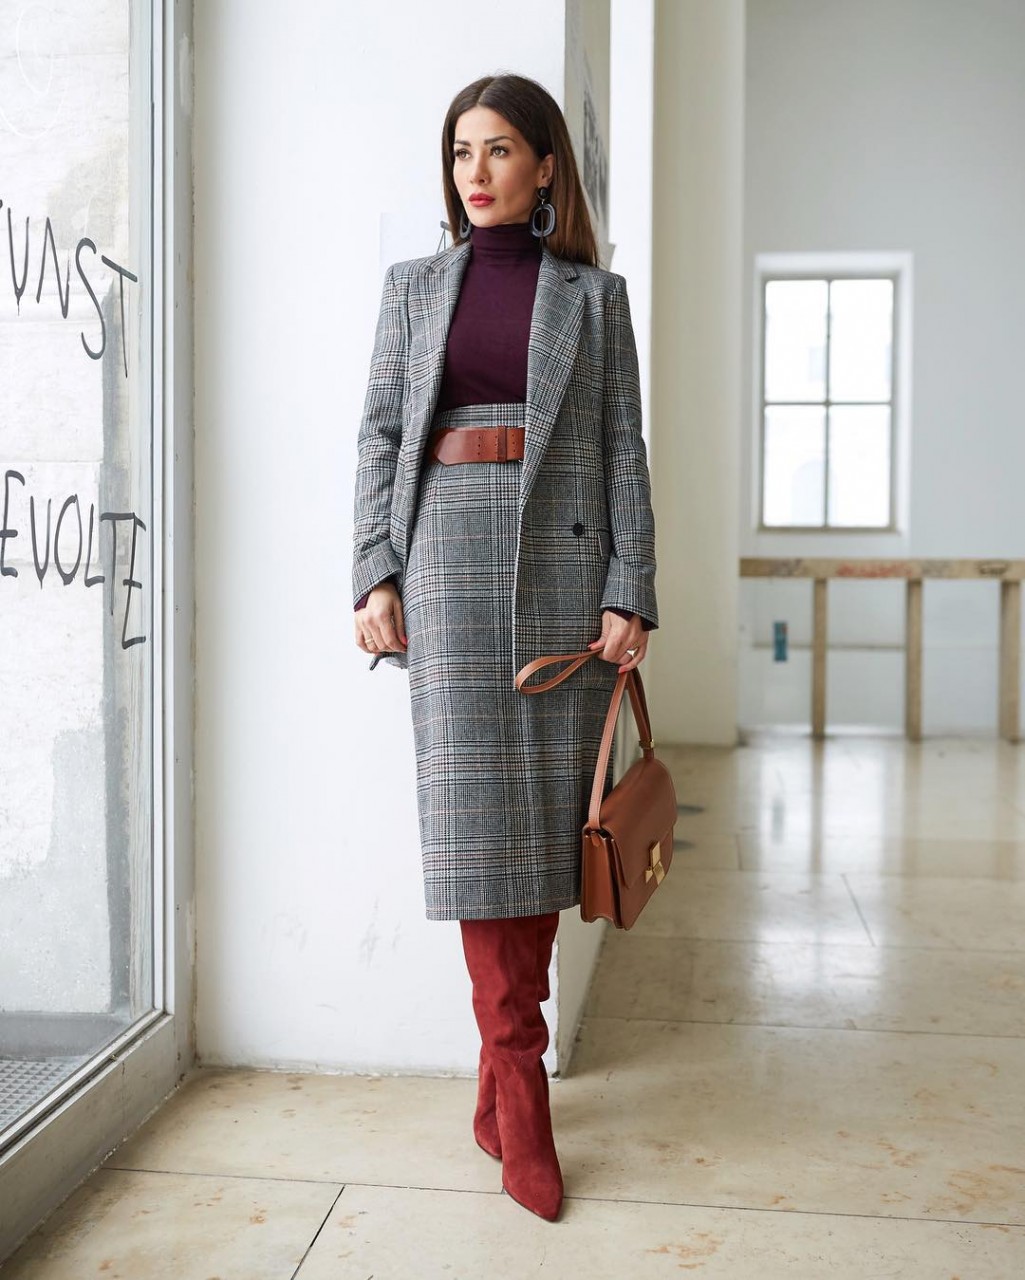 Деловой стиль для женщин возраста элегантности - 11 непревзойденных образов на весну 2019 мода